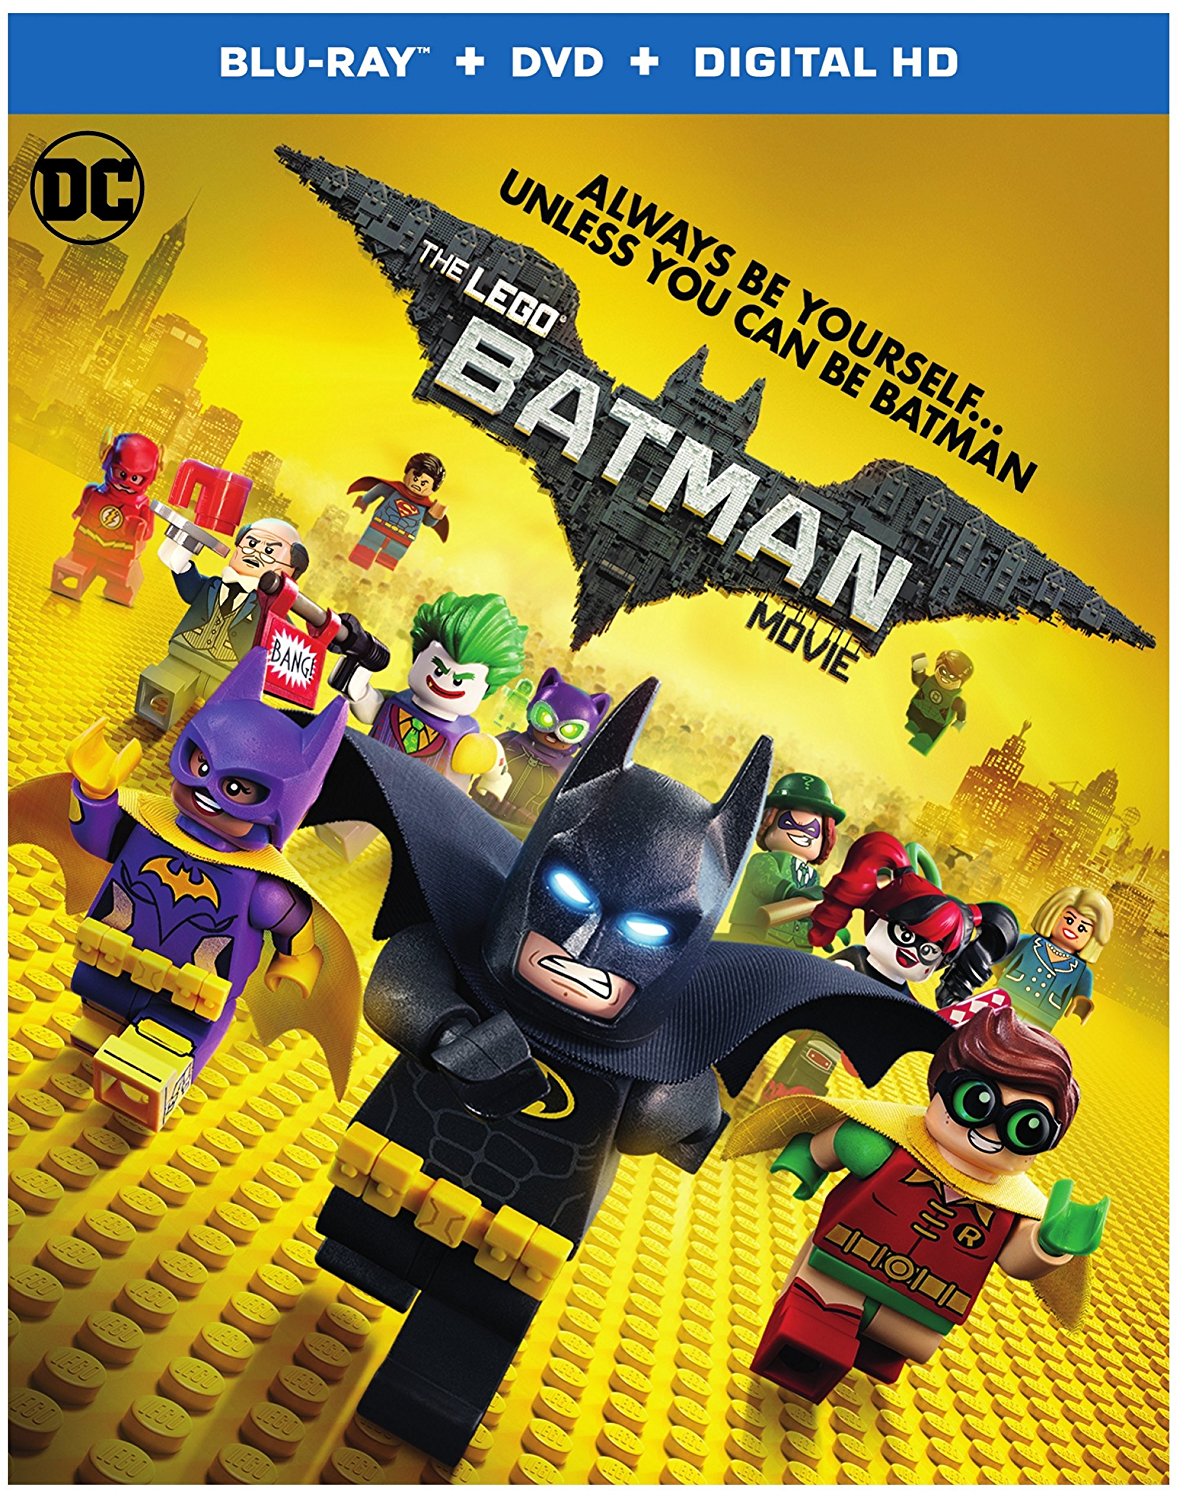 Interview: Director of 'LEGO Batman' Chris McKay Is the Hero We